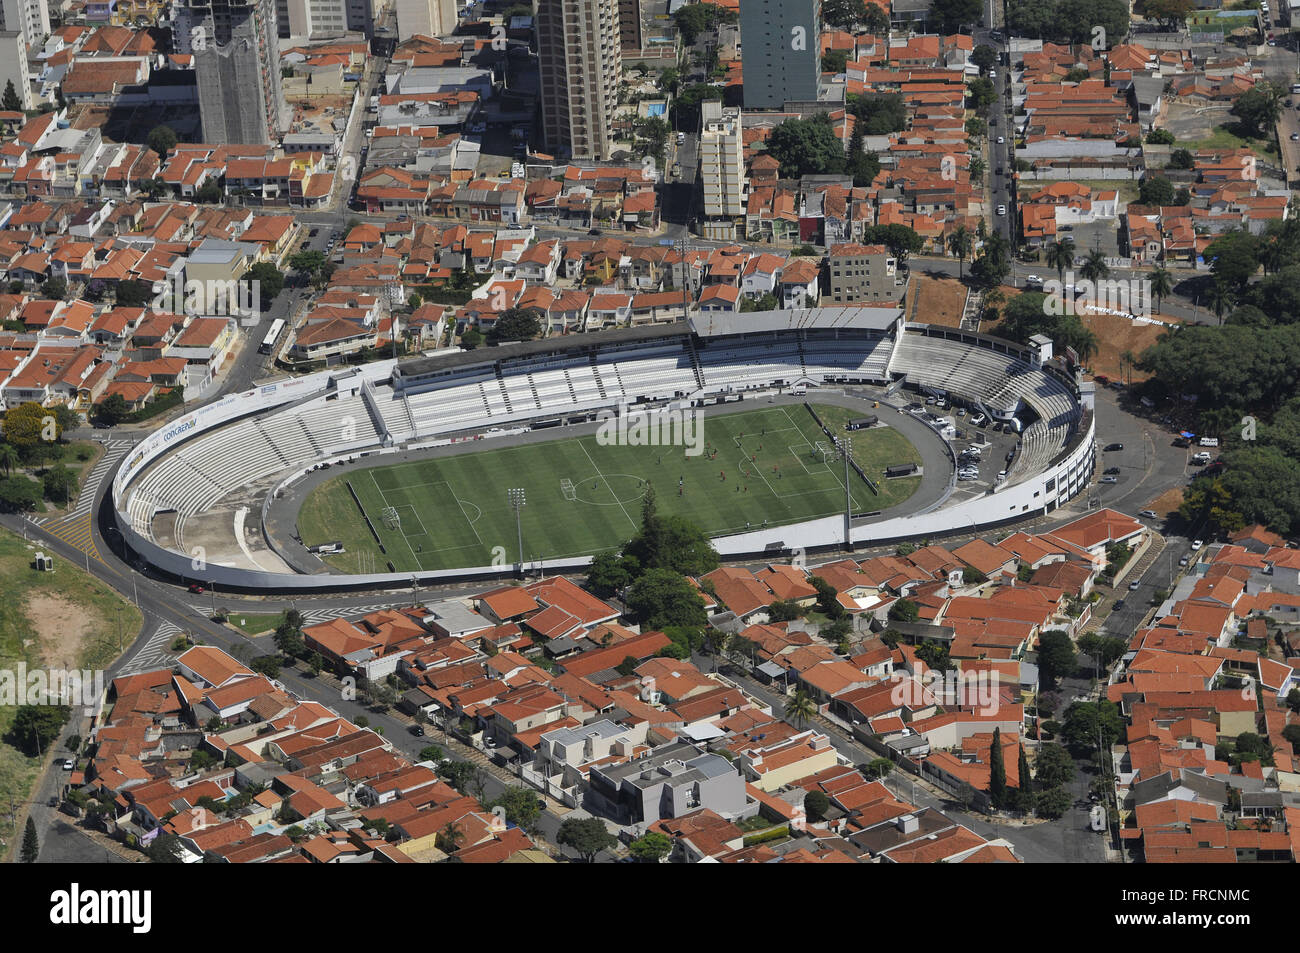 Aerial view of Moises Lucarelli Stadium - Estadio da Ponte Preta Stock Photo